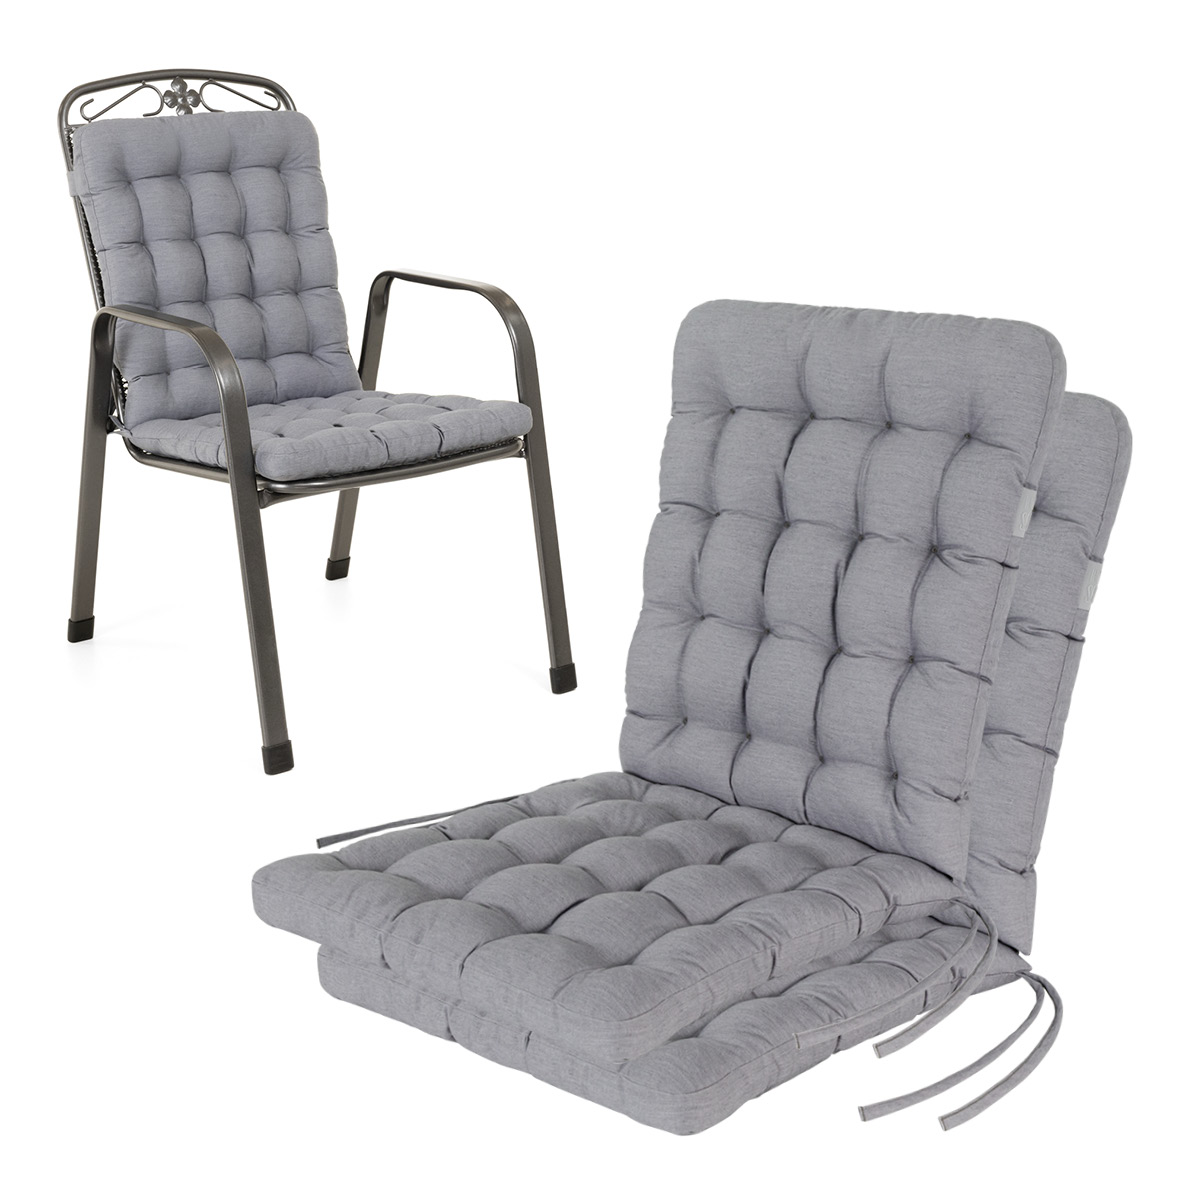 Cuscino per sedia con schienale basso 100x48 cm | Grigio chiaro | Set da 2 %